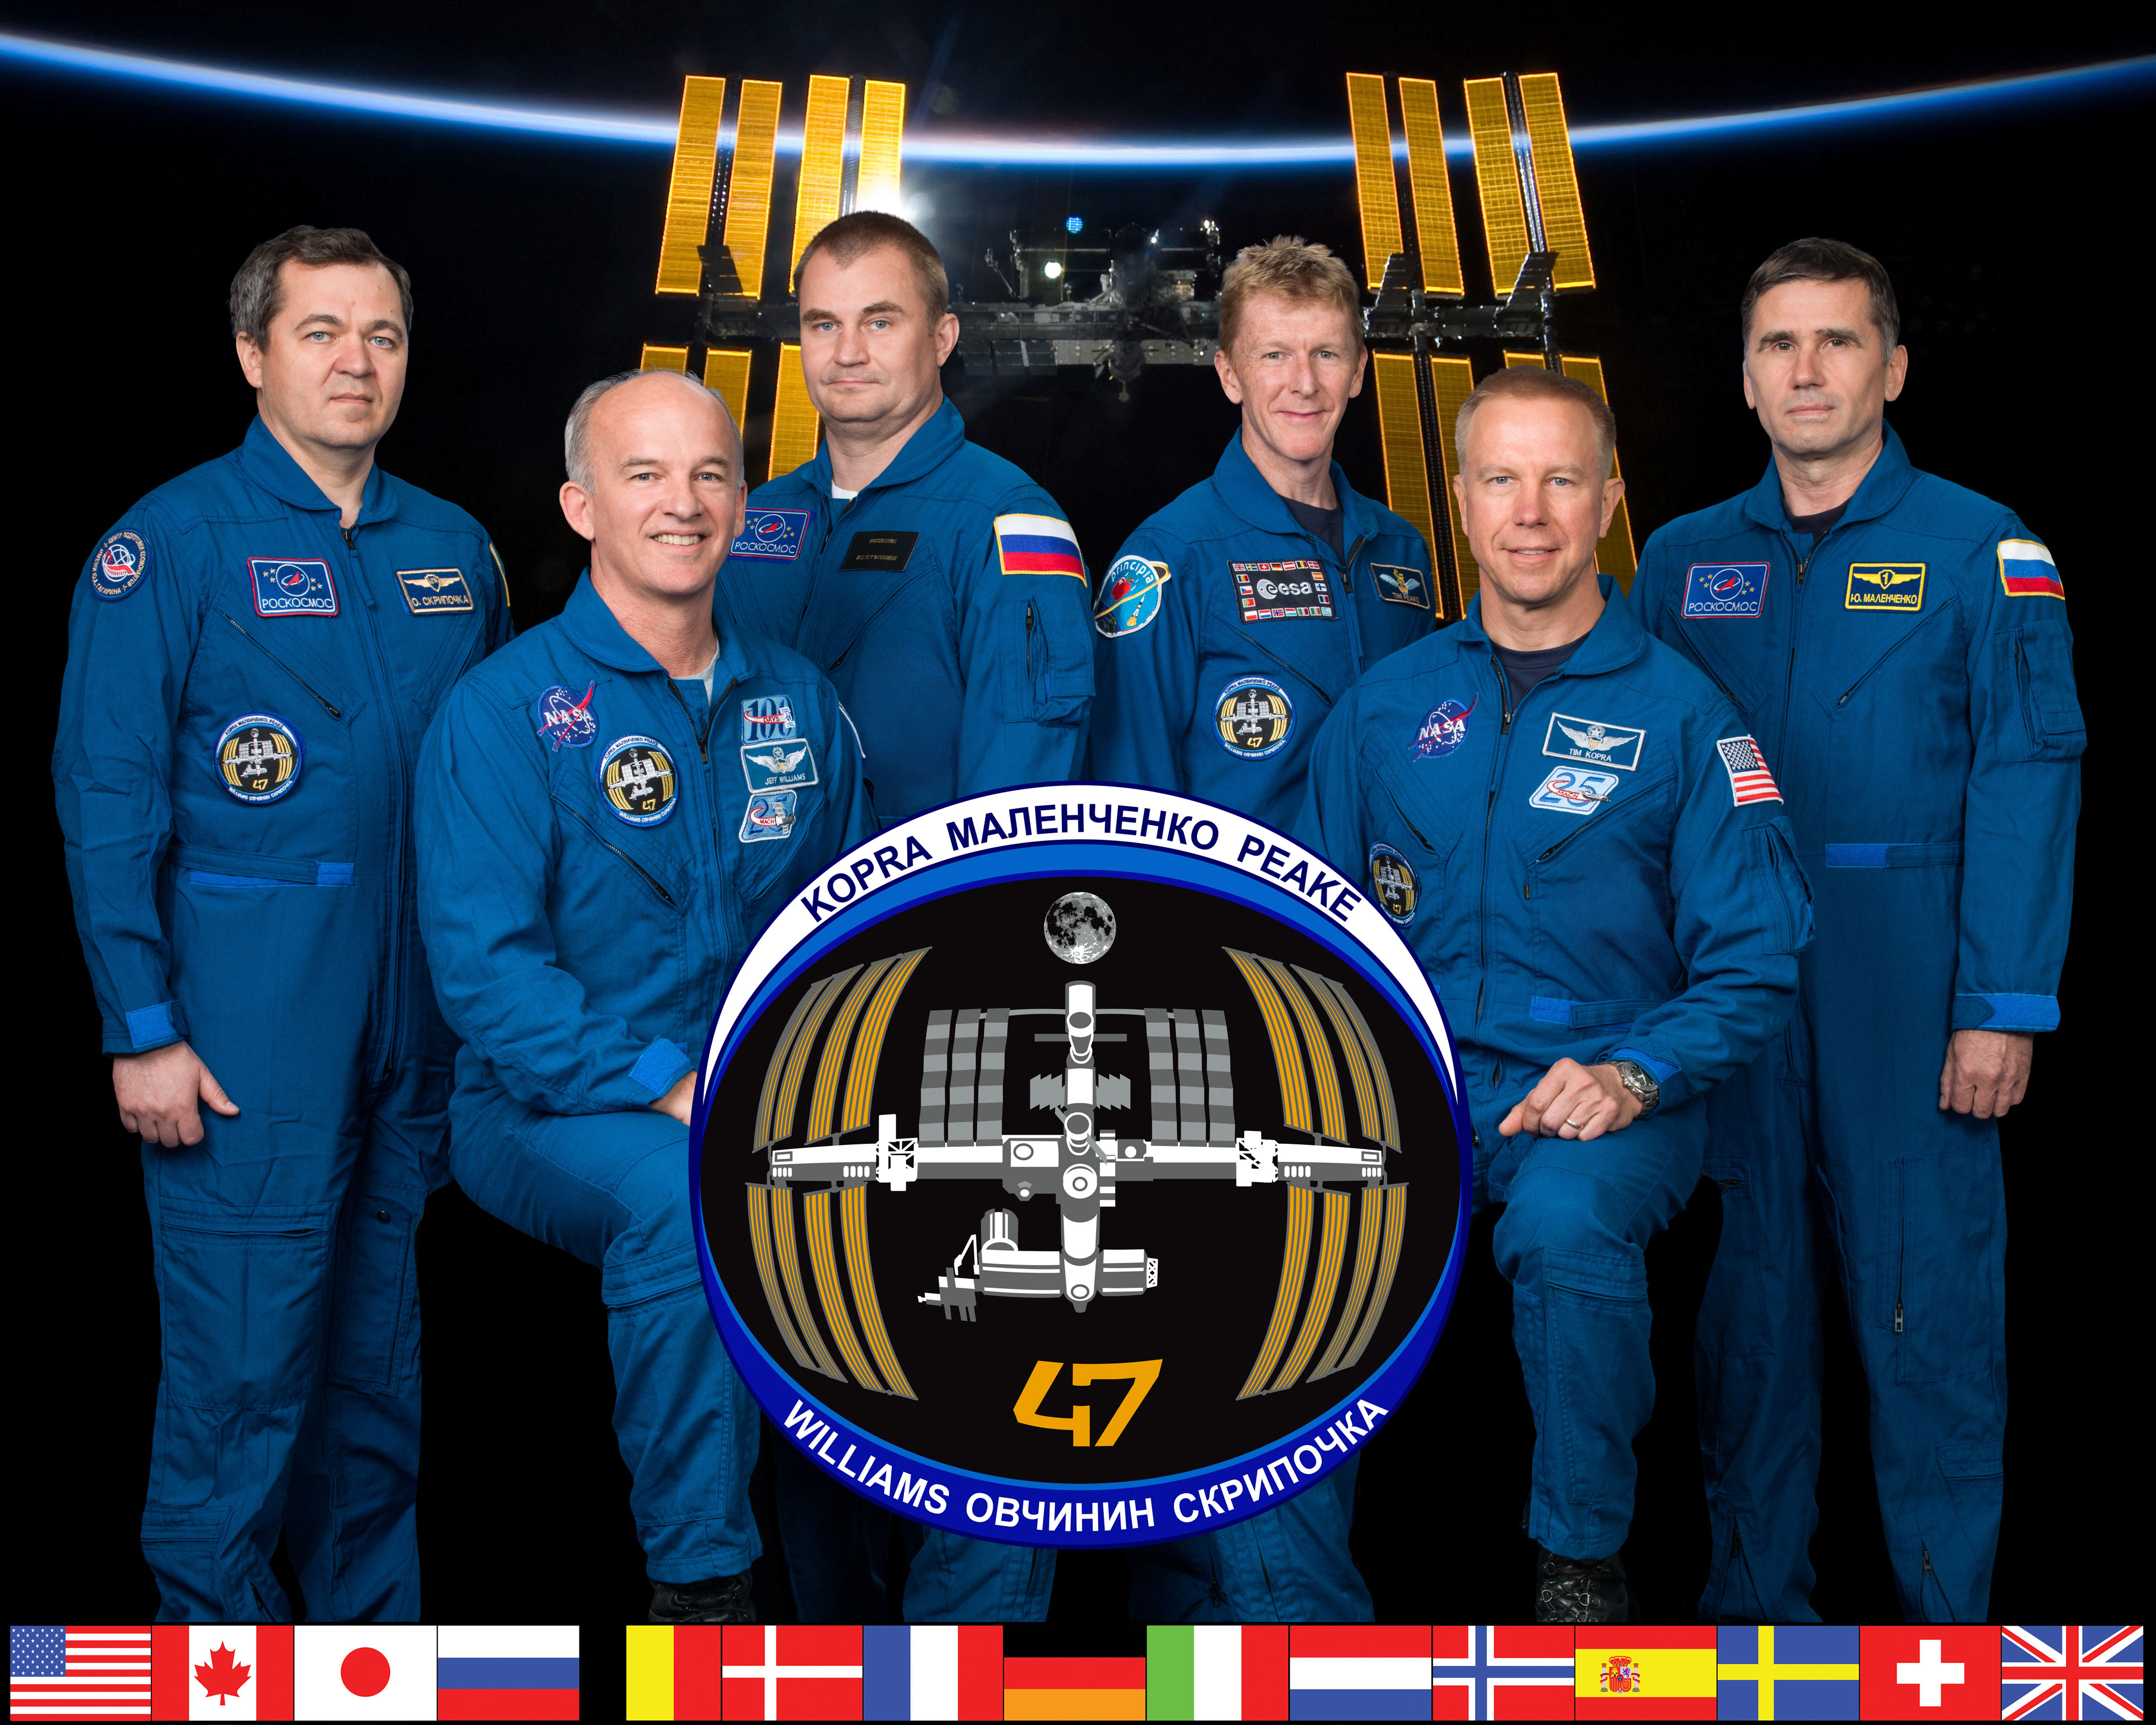 Expedition 47 crew portrait